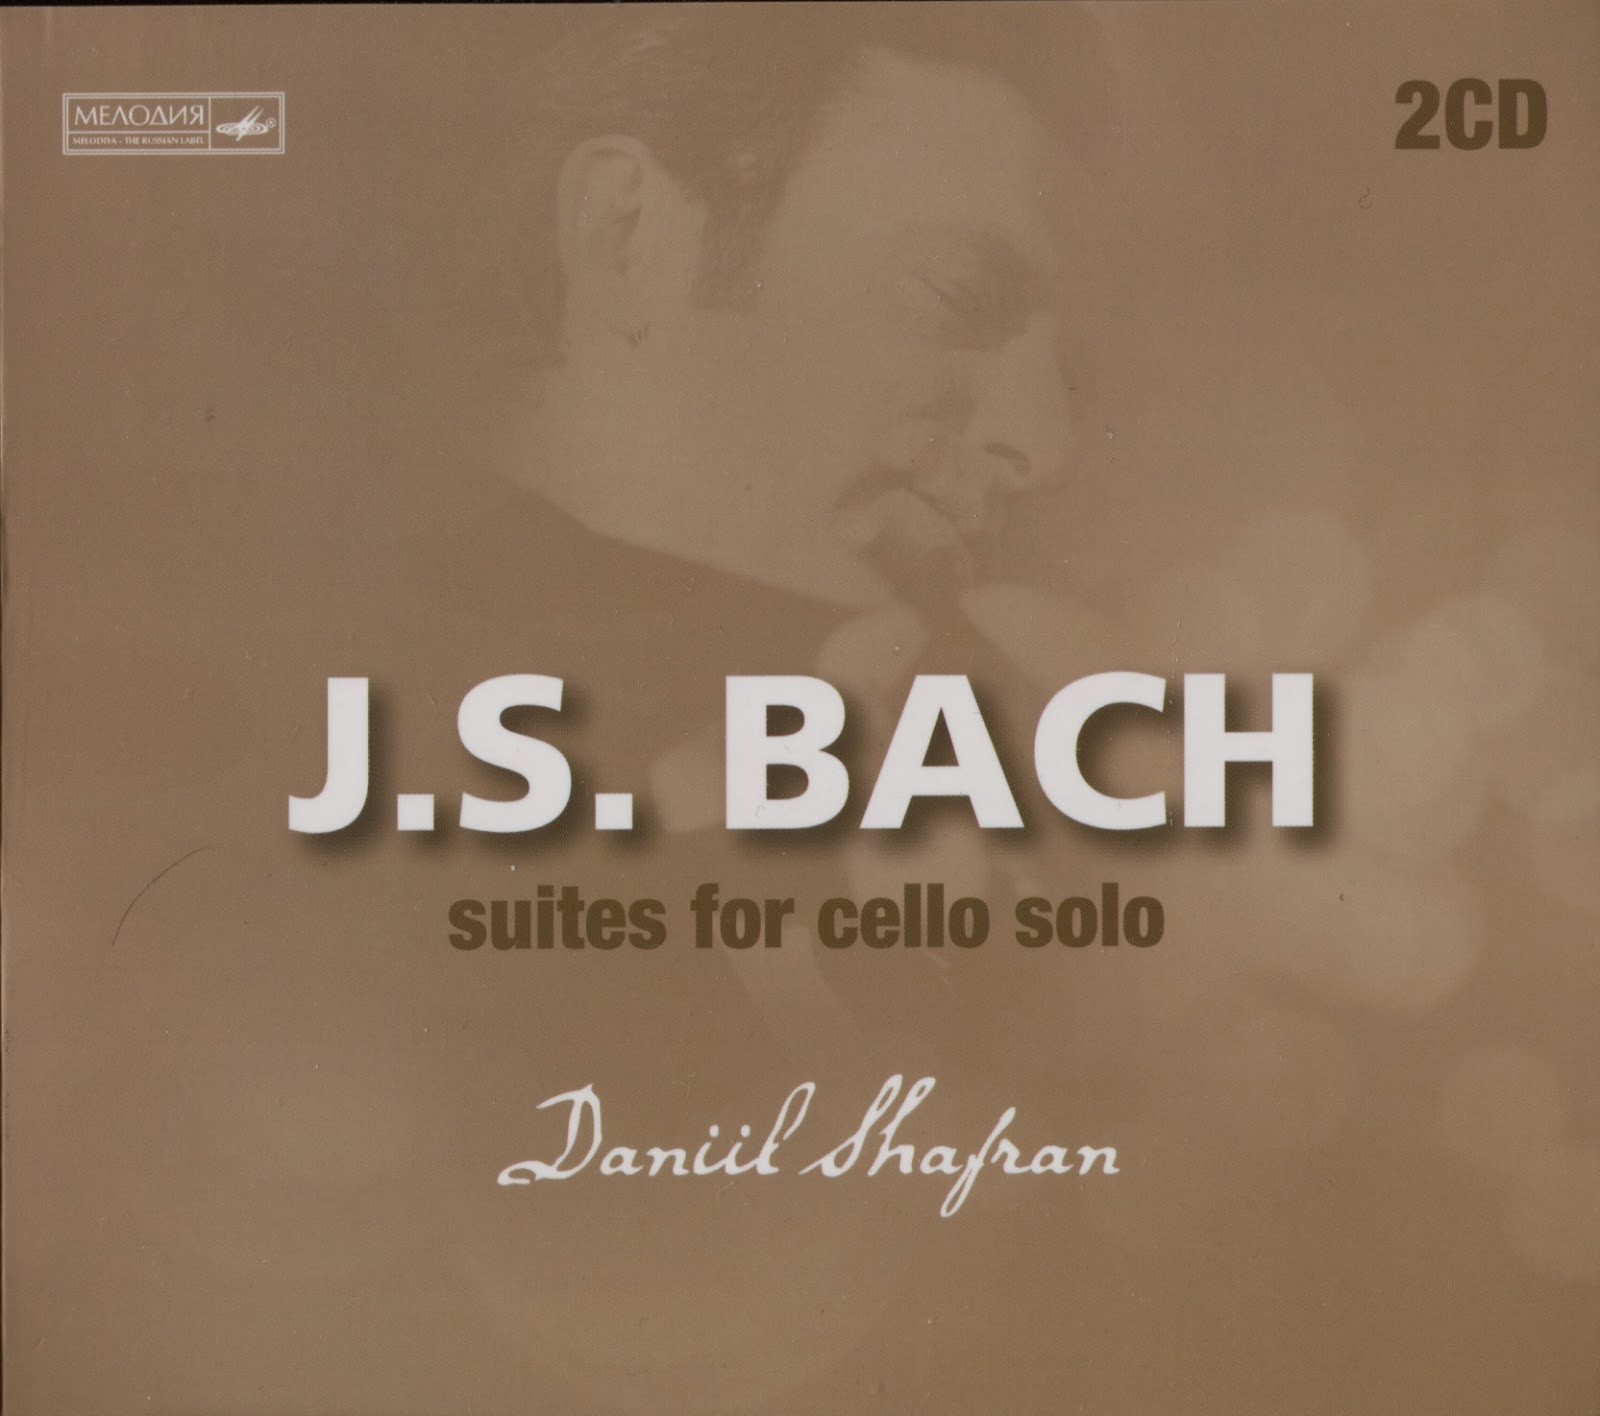 J. S. Bach. Suites for cello solo. Daniil SHAFRAN